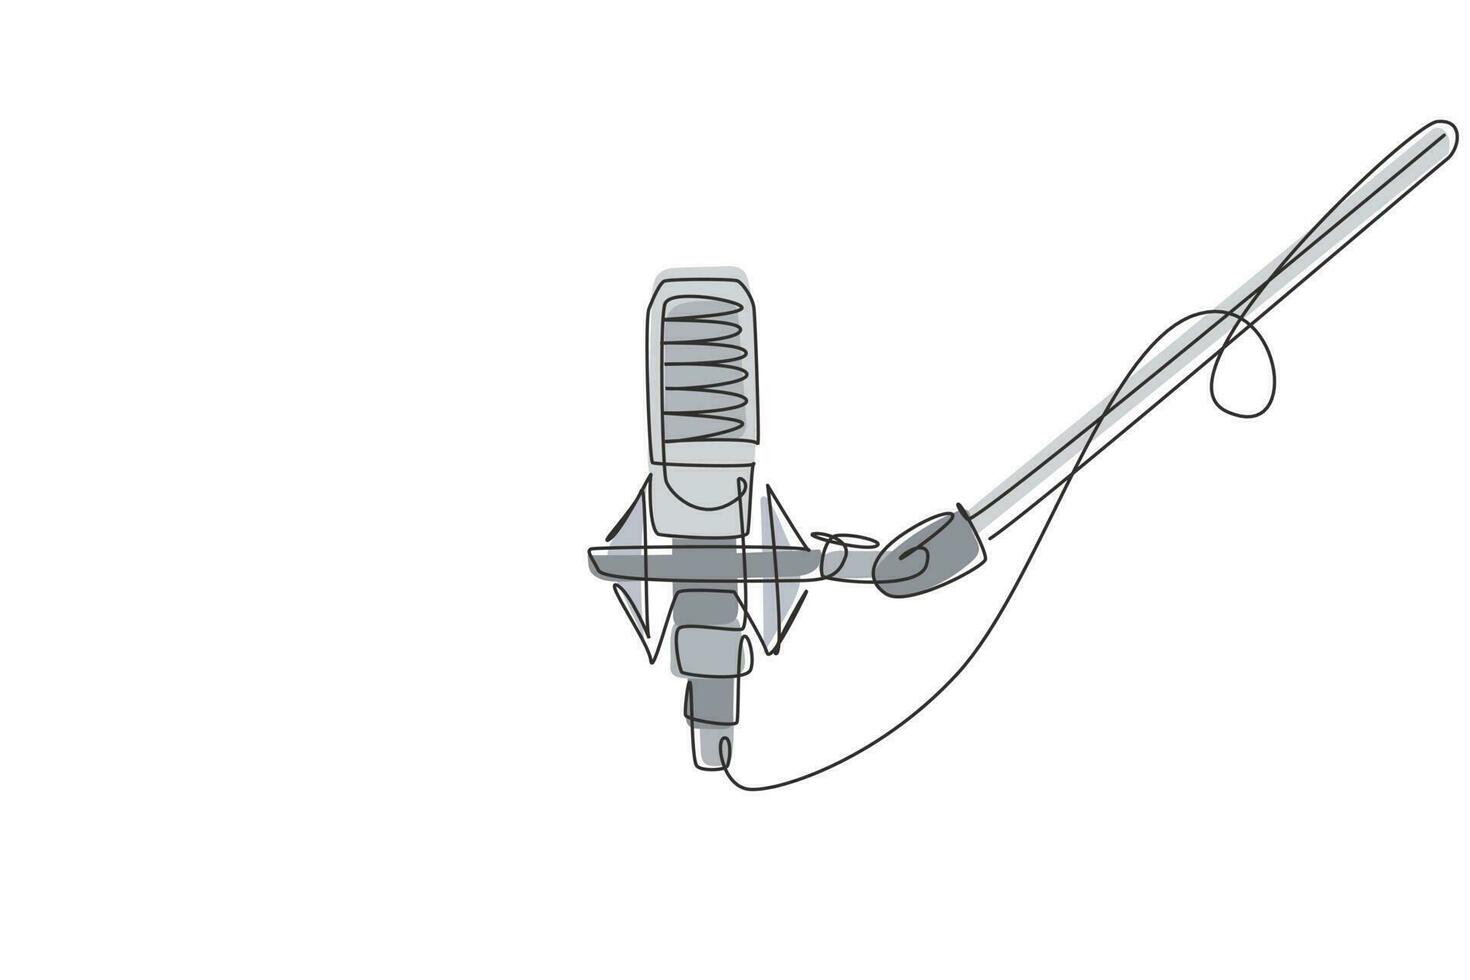 micrófono de dibujo continuo de una línea aislado con trazado de recorte. Micrófono de condensador para estudio de grabación de voz. concepto de equipo de grabación de sonido. ilustración gráfica de vector de diseño de dibujo de una sola línea